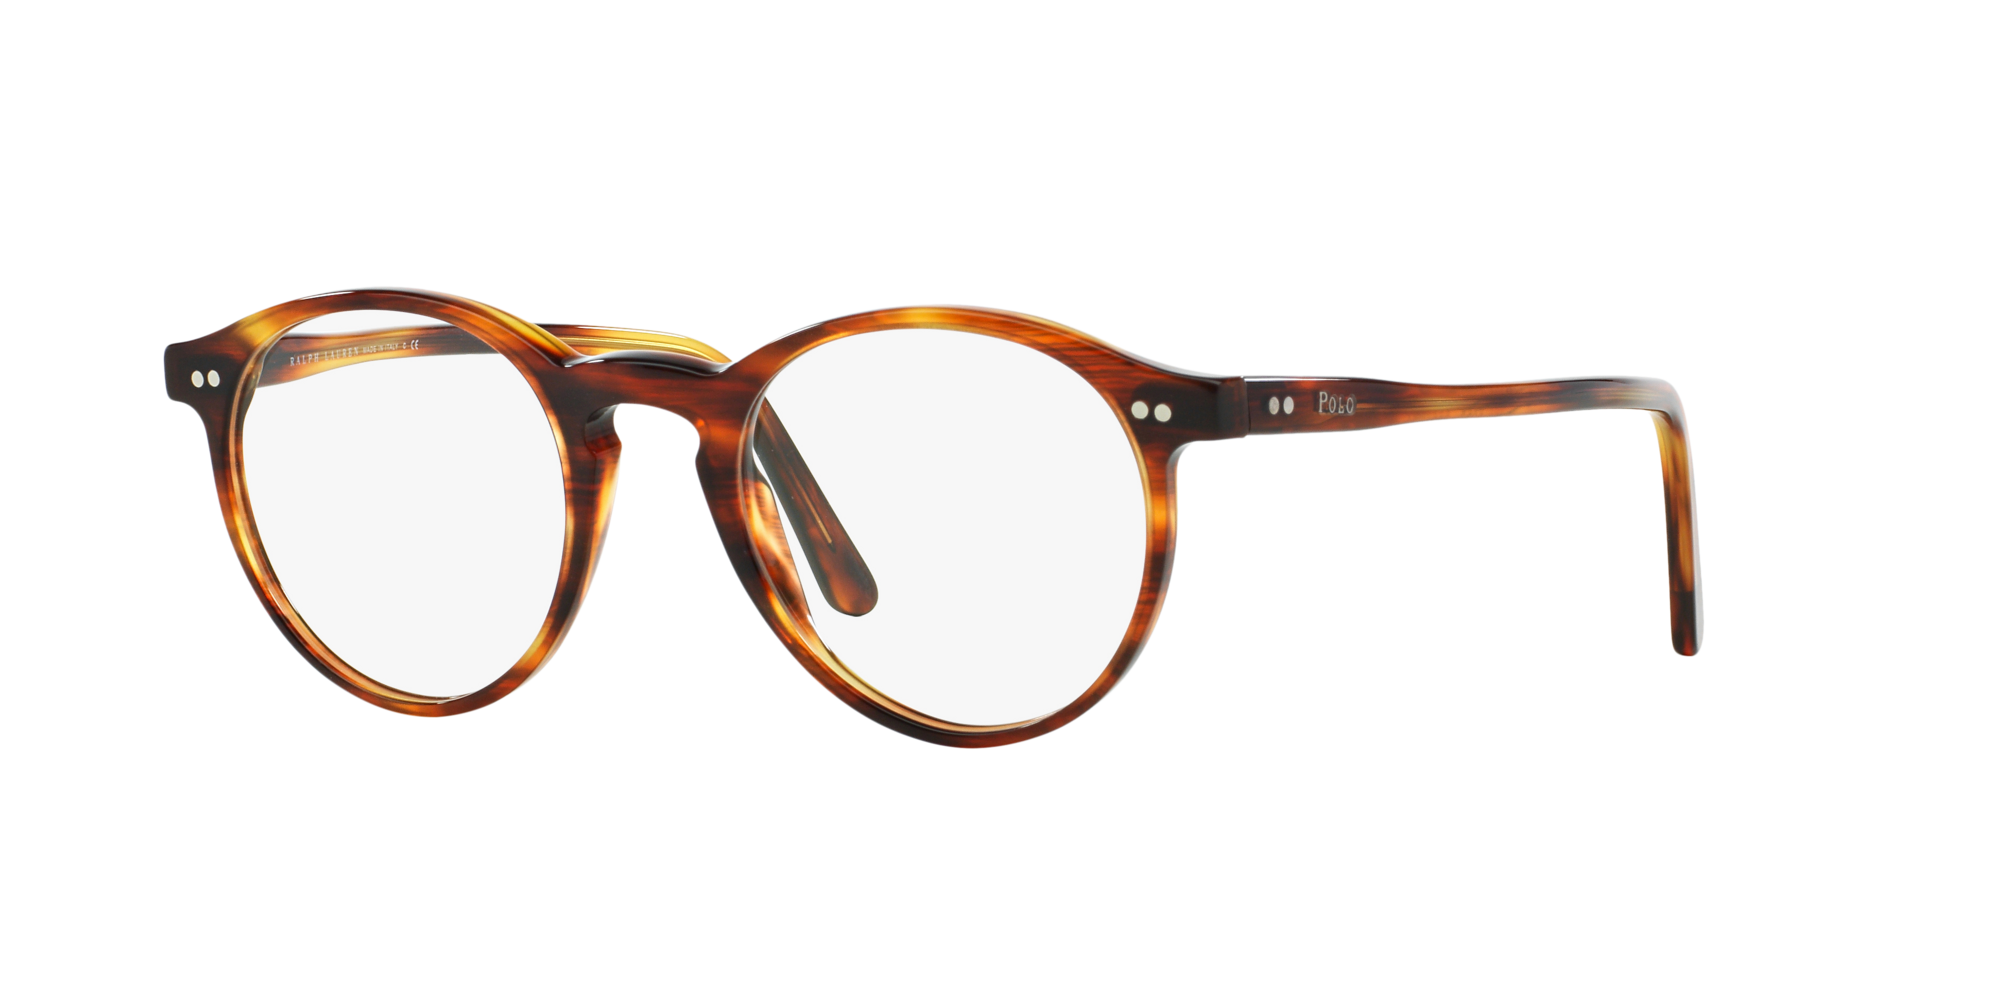 Angle_Left01 Polo Ralph Lauren PH 2083 Glasses Transparent / Tortoise Shell